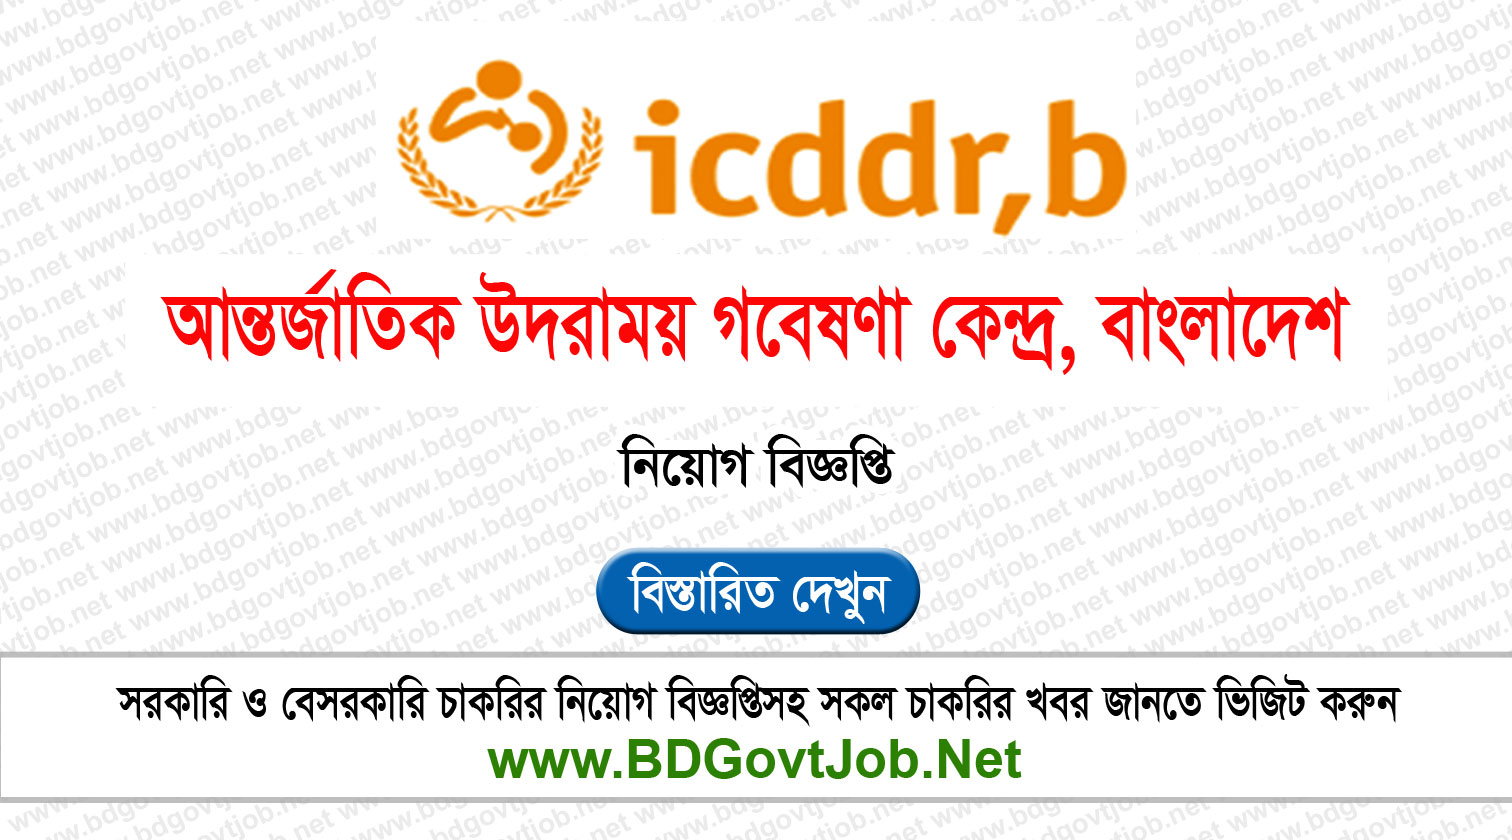 ICDDRB Job Circular